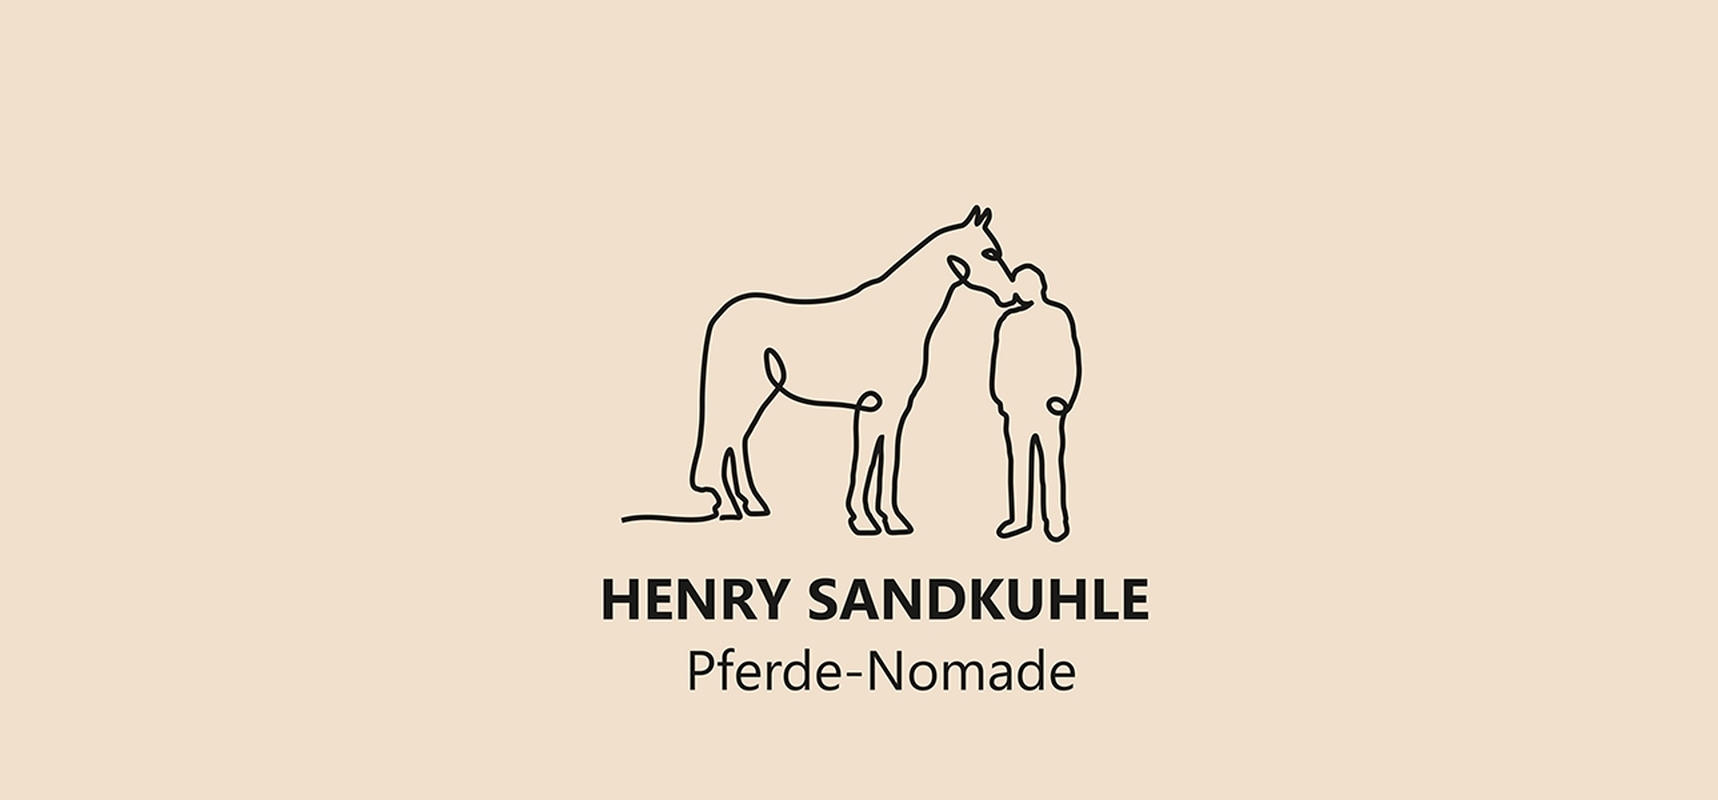 Henry Sandkuhle Pferde-Nomade